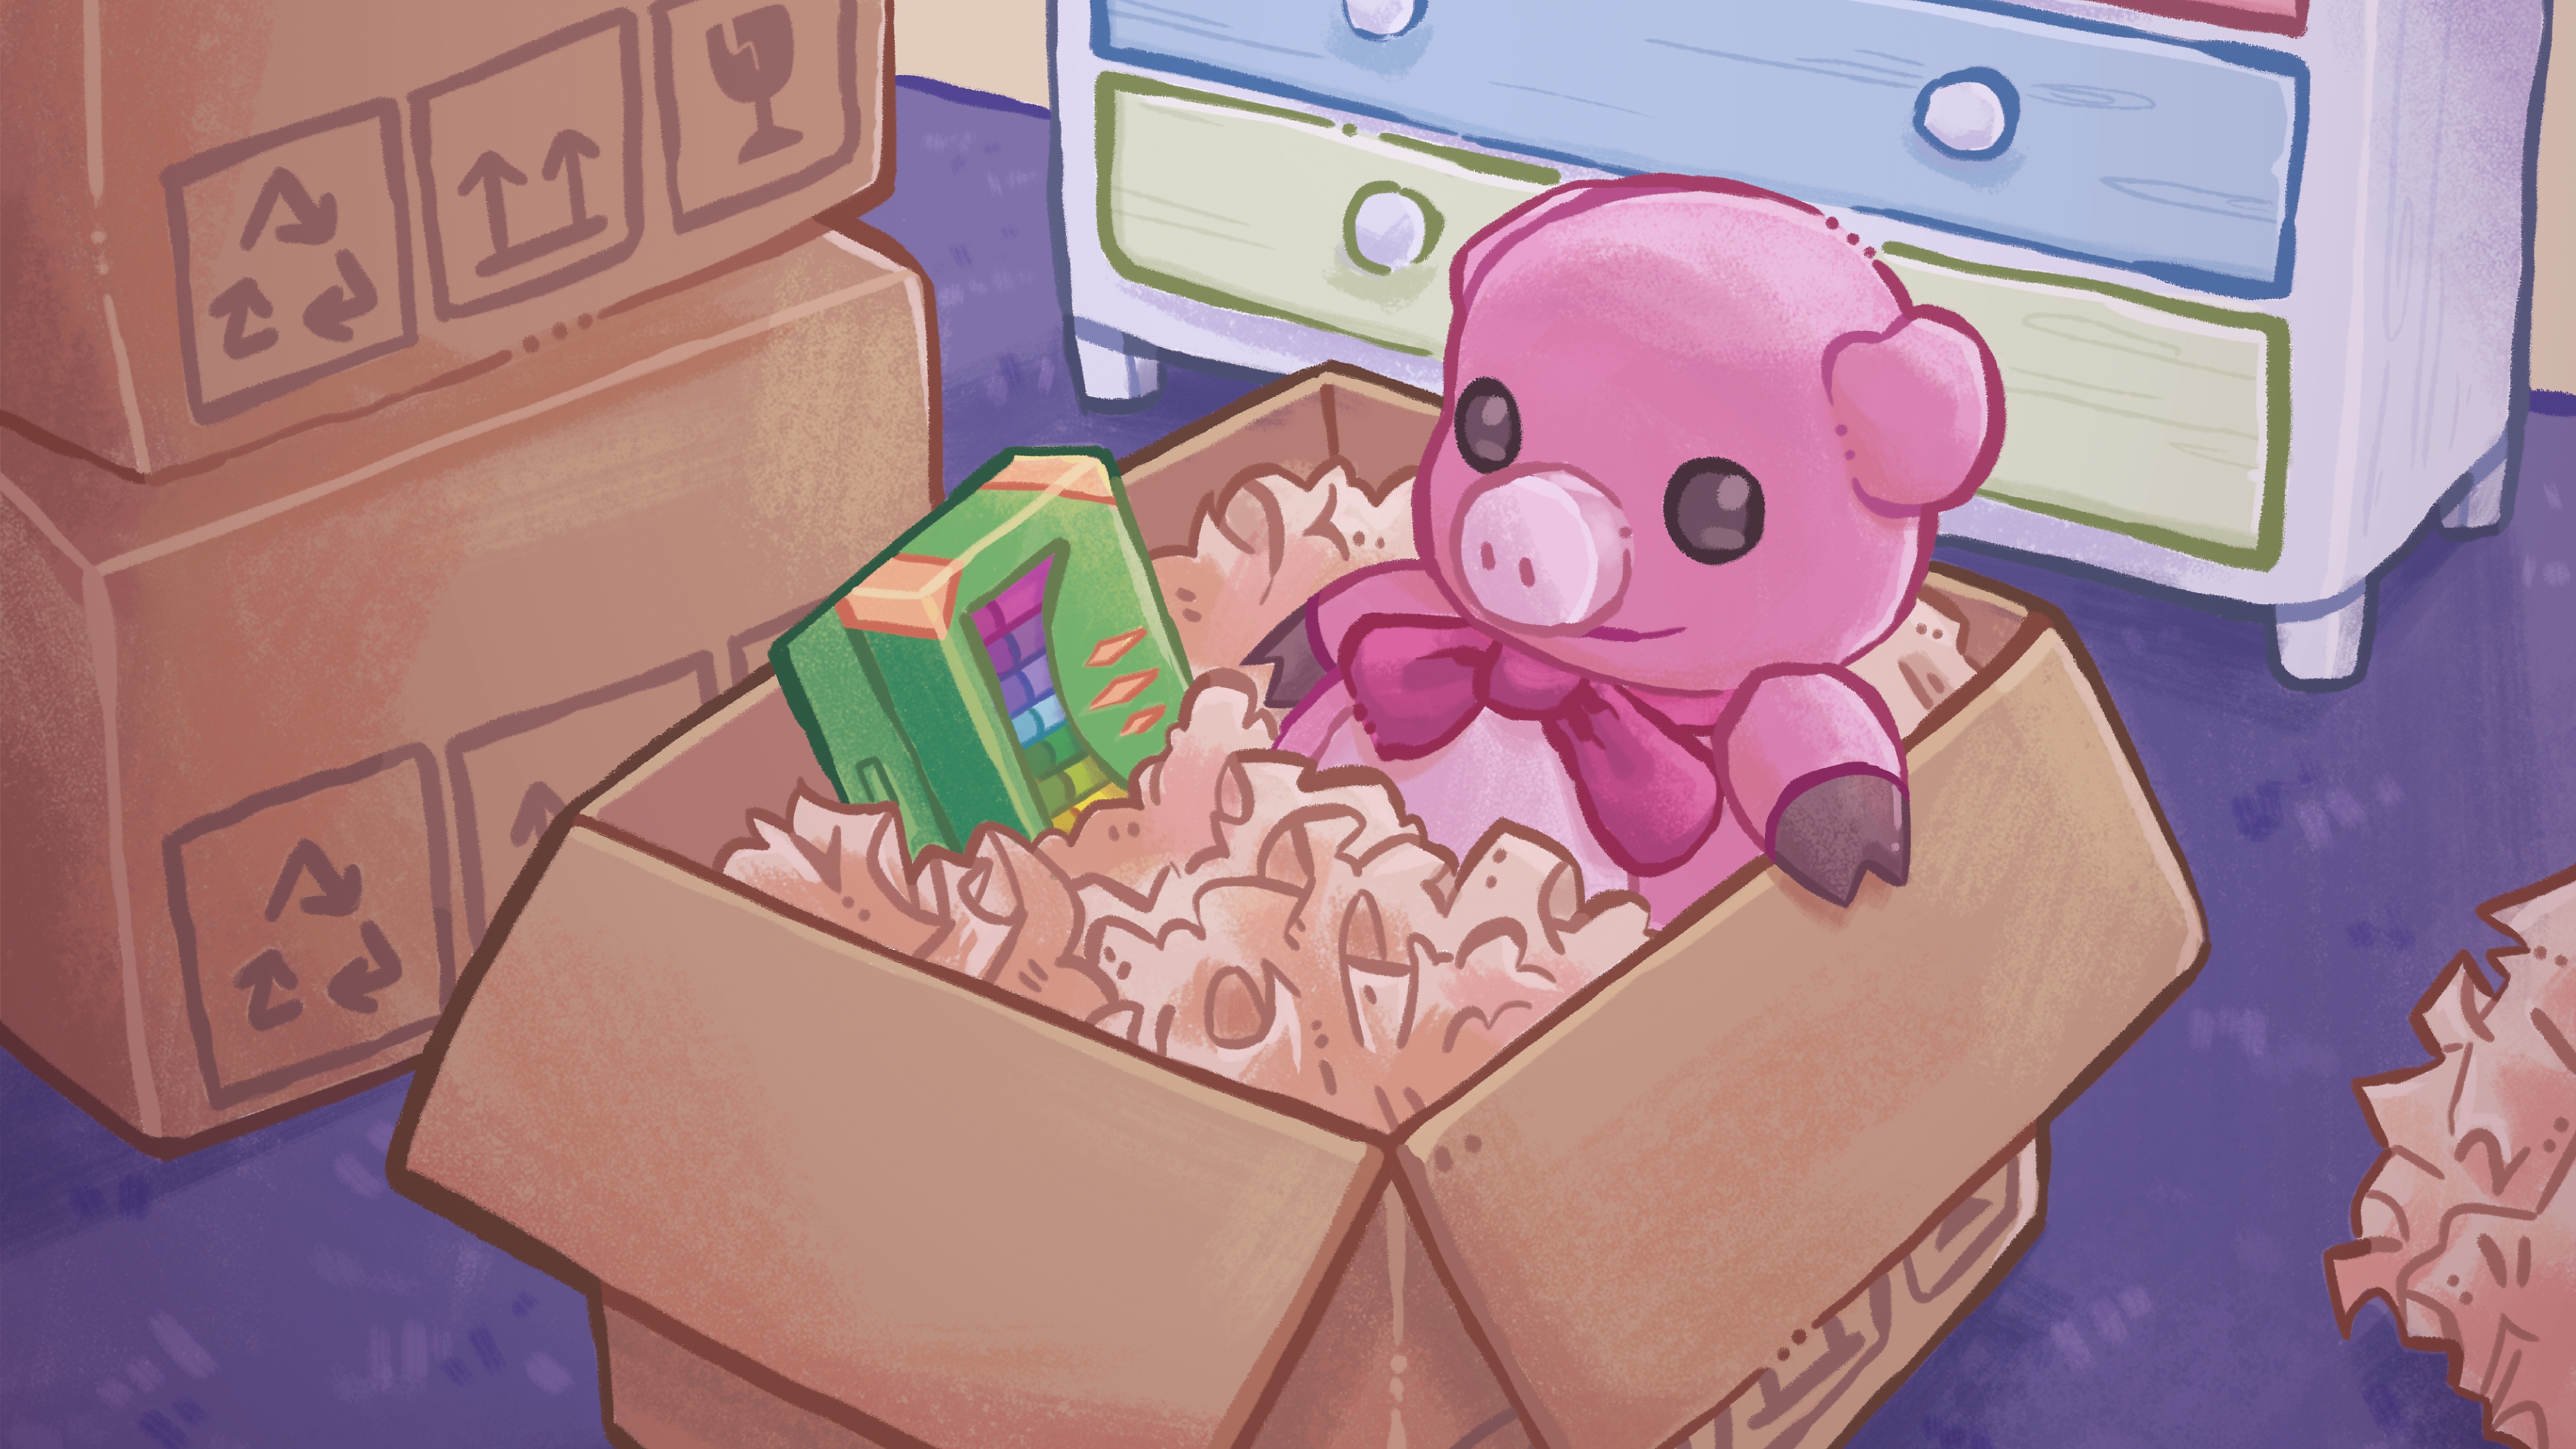 Az Unpacking fő grafikája, rajta egy kézzel rajzolt illusztráció egy plüssmackóval és egy doboz zsírkrétával egy kartondobozban